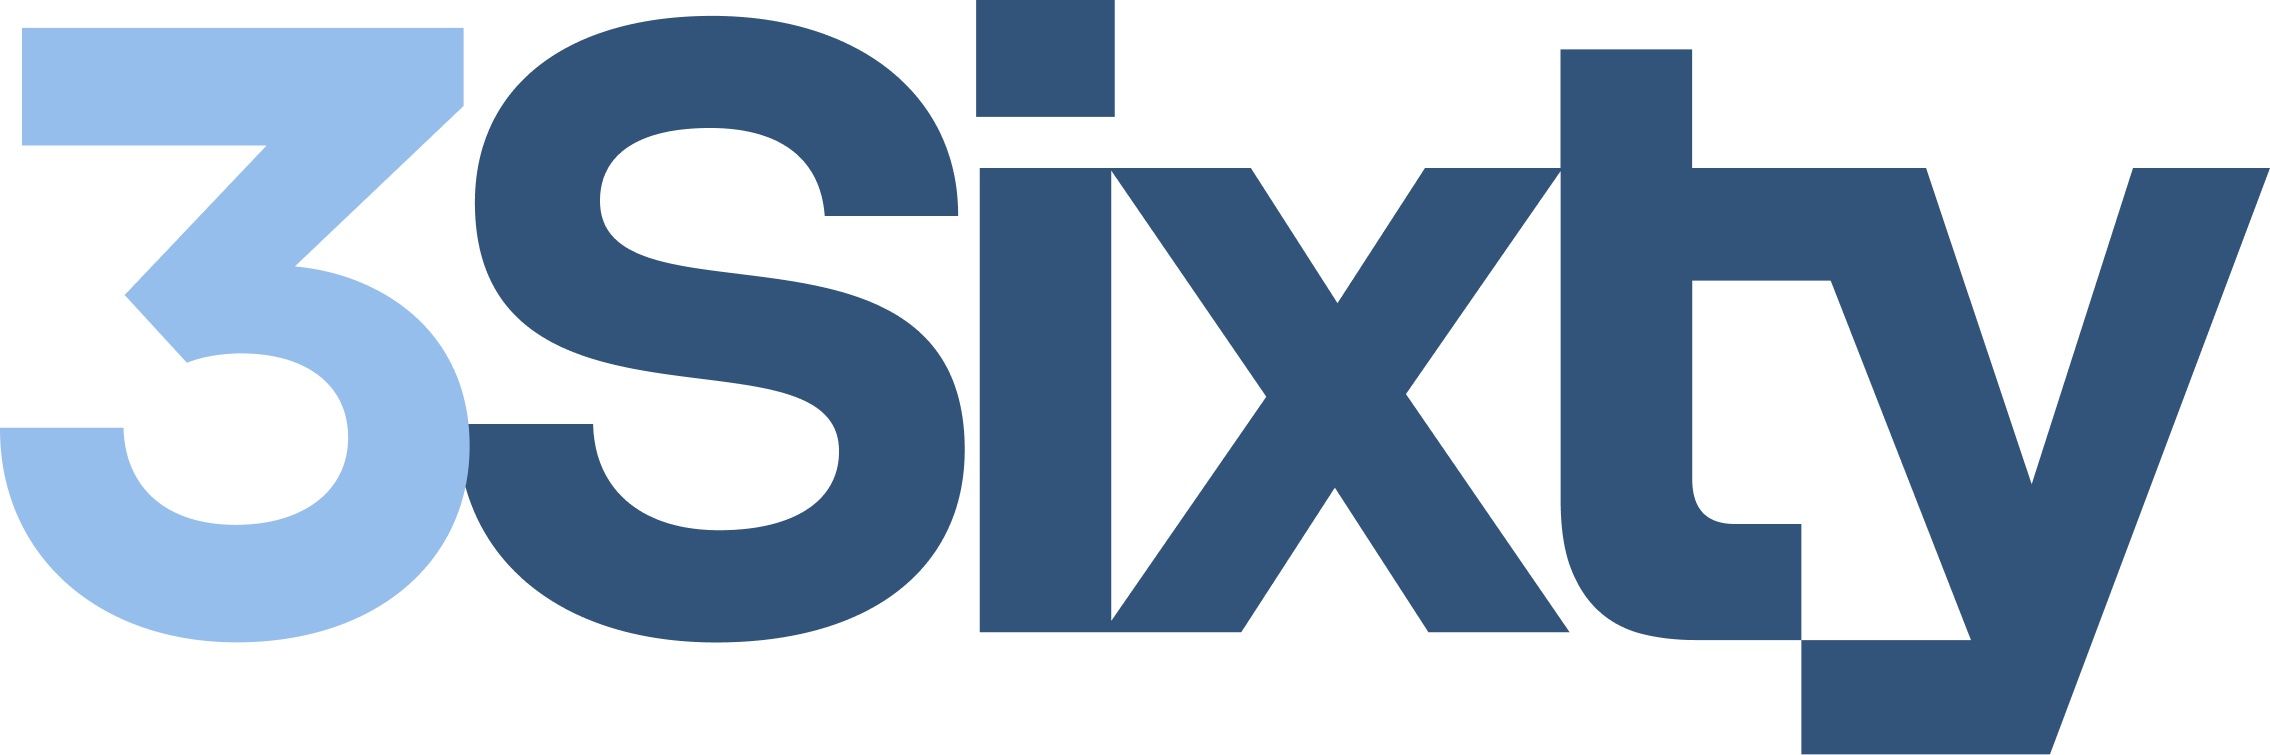 3sixty logo